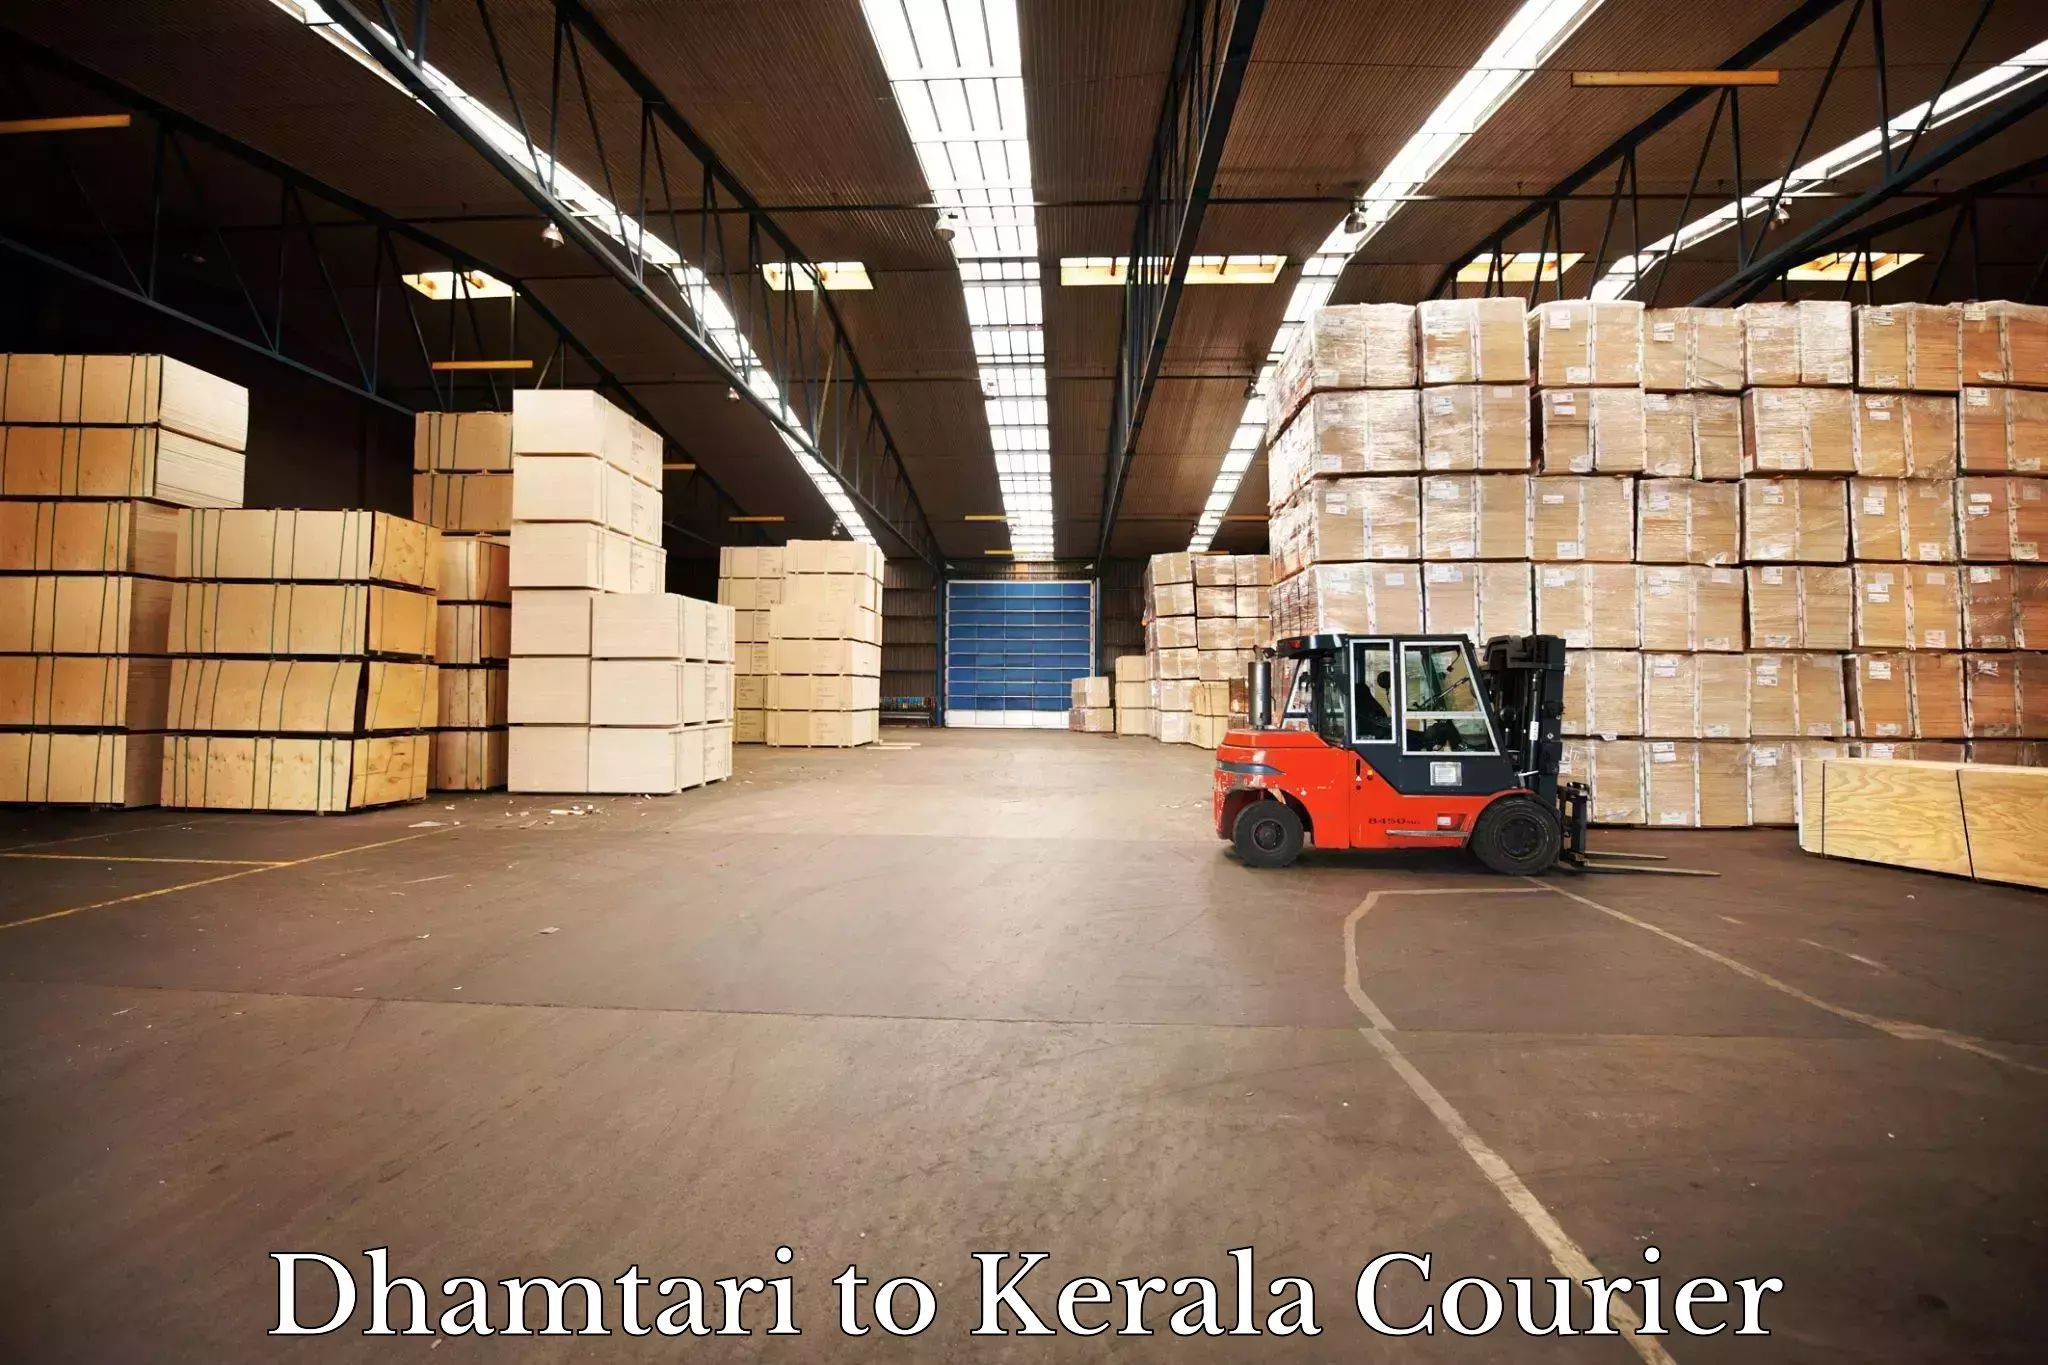 Courier app Dhamtari to Kerala